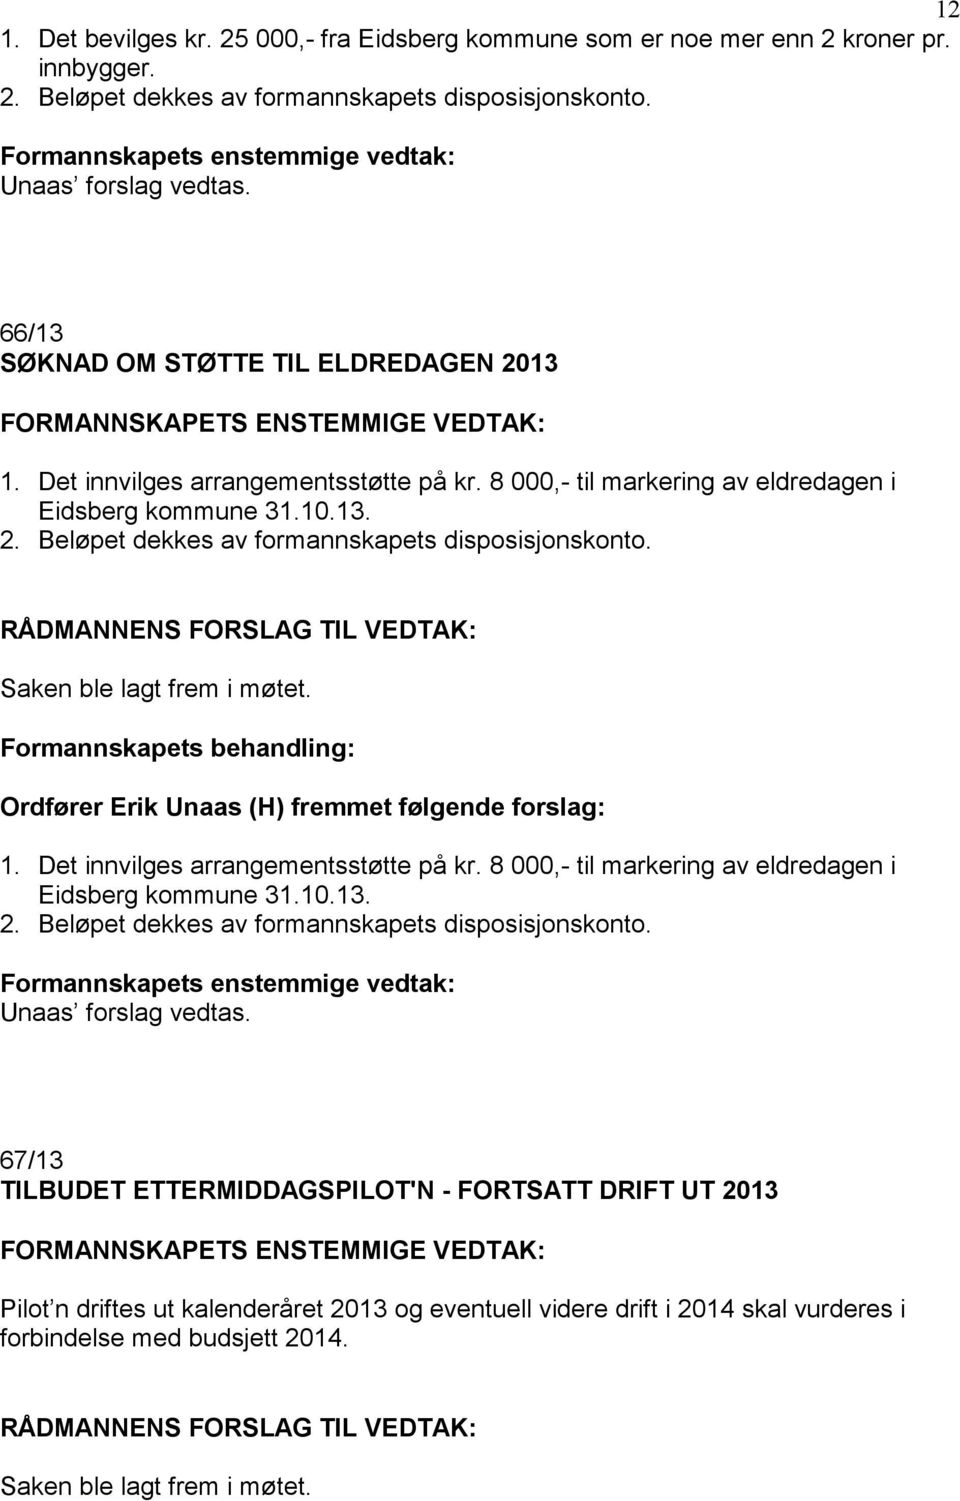 8 000,- til markering av eldredagen i Eidsberg kommune 31.10.13. 2. Beløpet dekkes av formannskapets disposisjonskonto. Saken ble lagt frem i møtet.